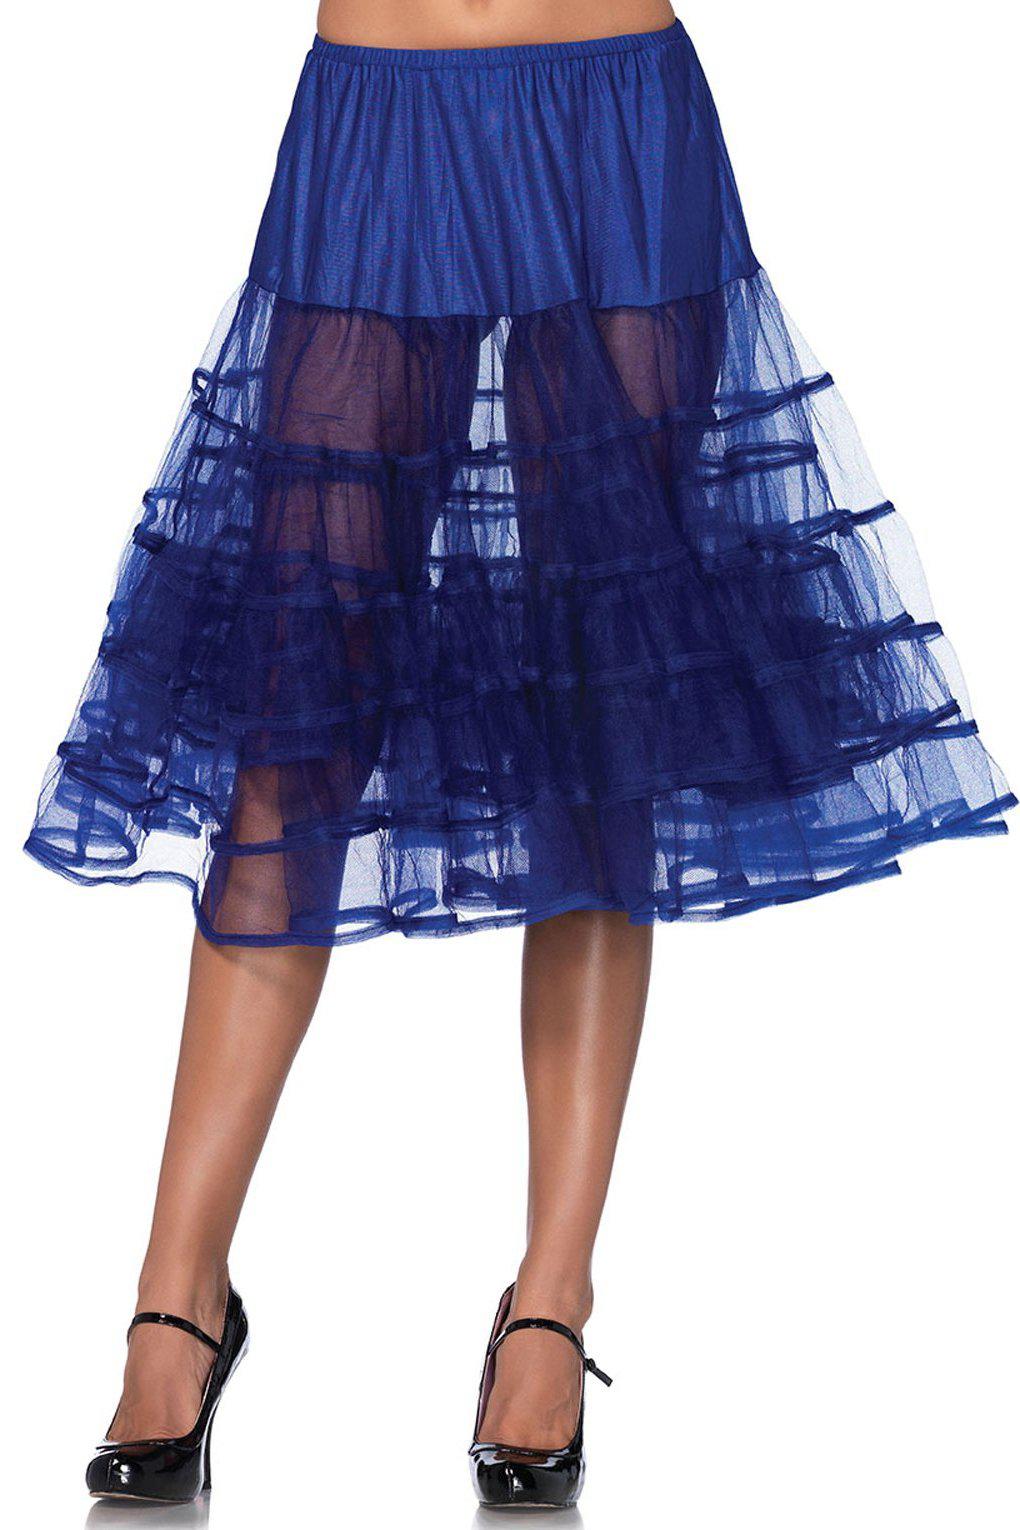 Mid-Length Petticoat-TuTu + Petticoat-Leg Avenue-Blue-O/S-SEXYSHOES.COM